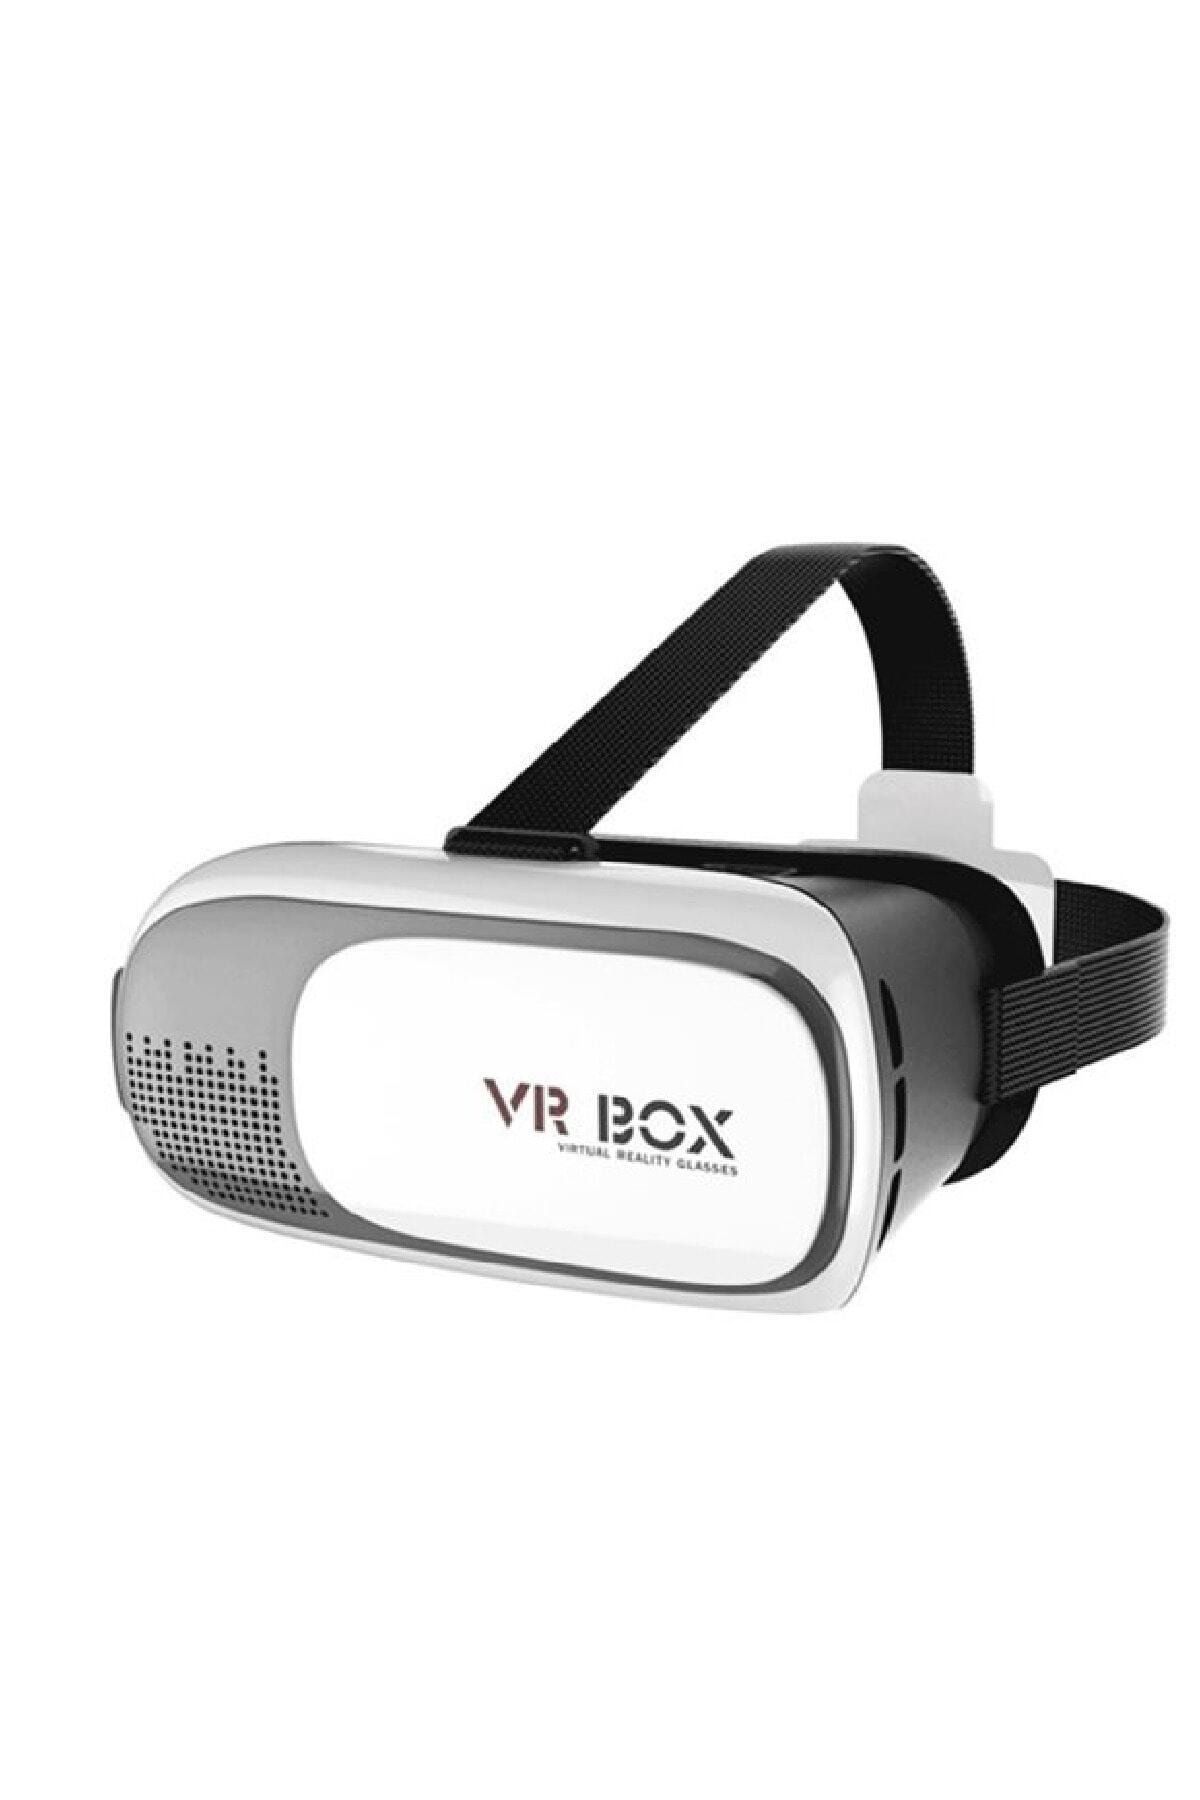 Vr Box Vr-box 3d Sanal Gerçeklik Gözlüğü Akıllı Gözlük Vrbox5645